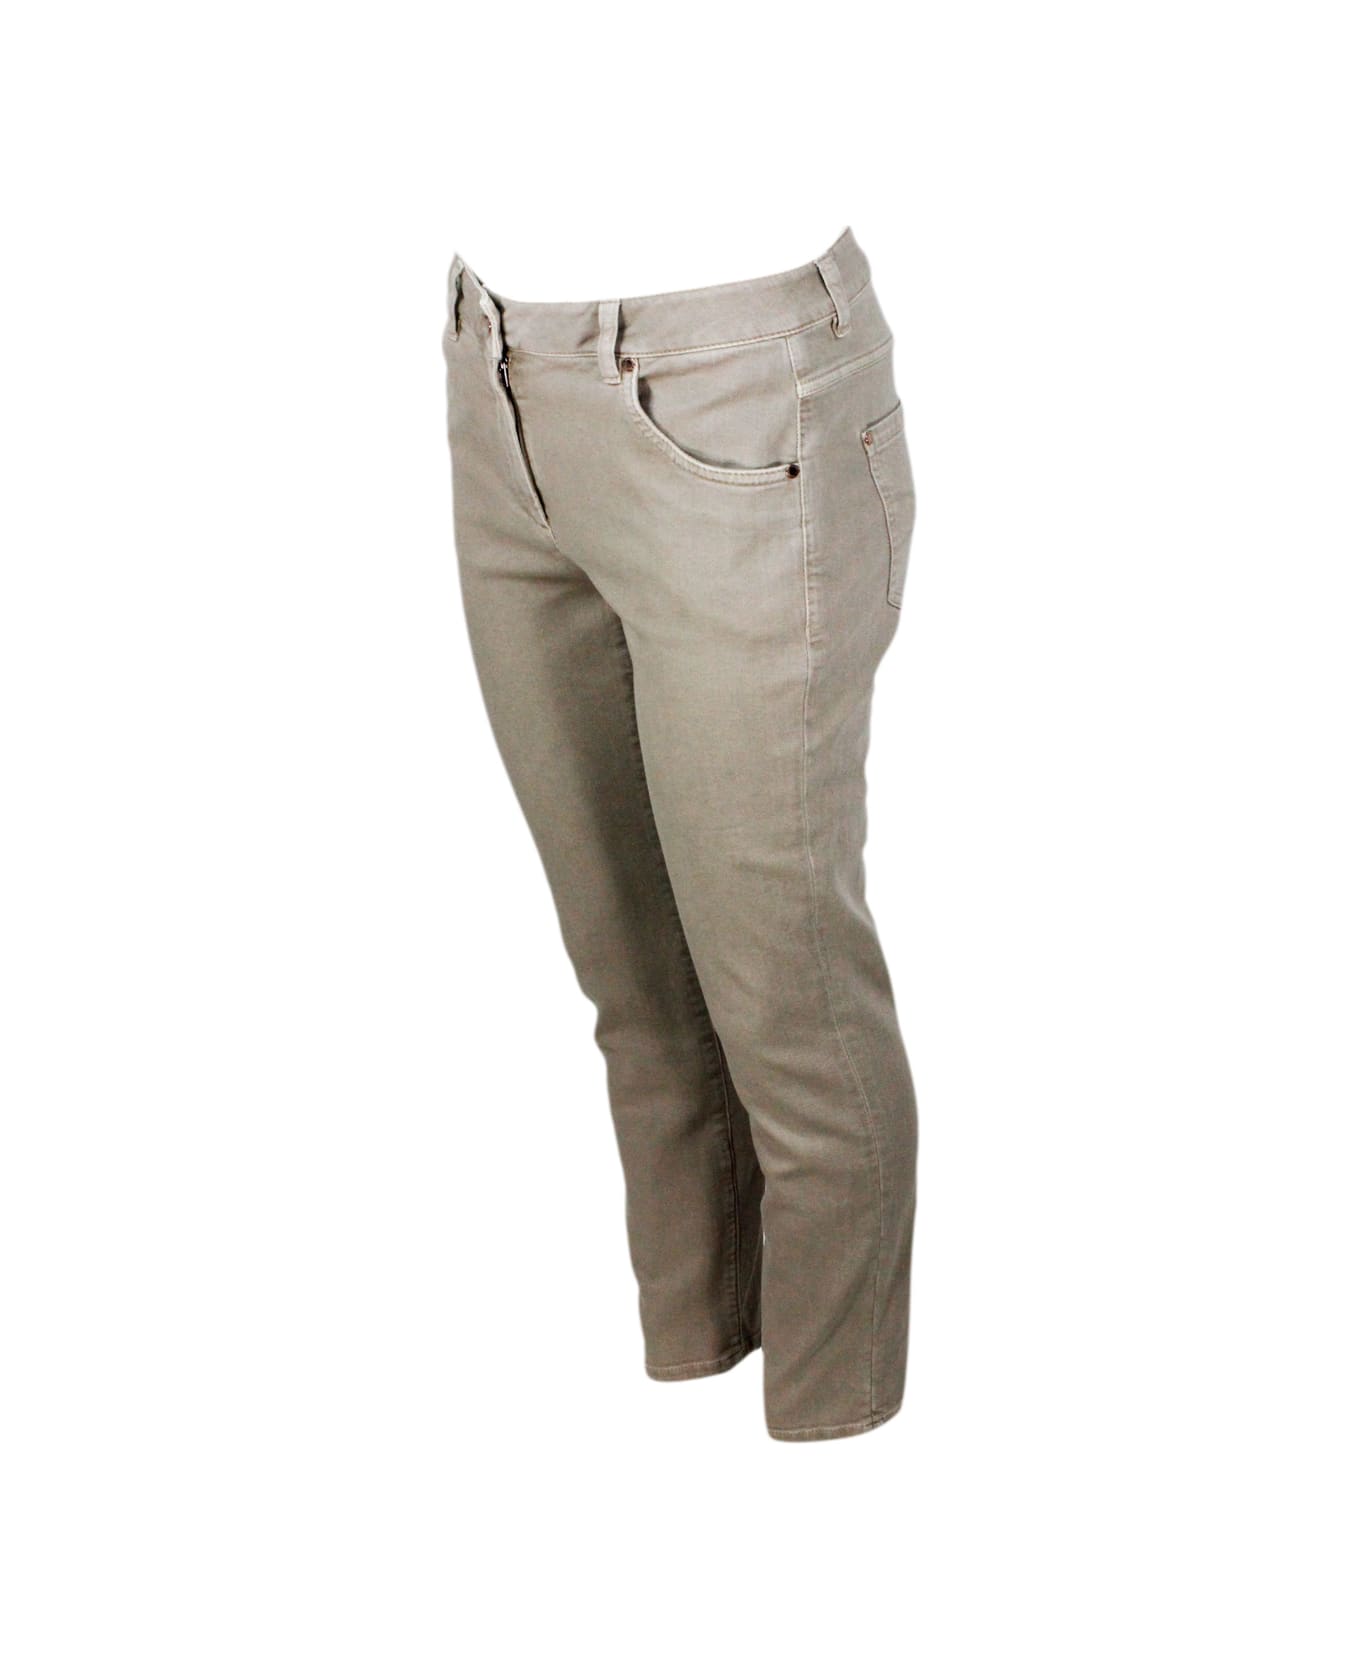 Brunello Cucinelli Pantalone A 5 Tasche In Drill Di Cotone Stretch Con Monile Sulla Tasca Posteriore - Beige freddo ボトムス